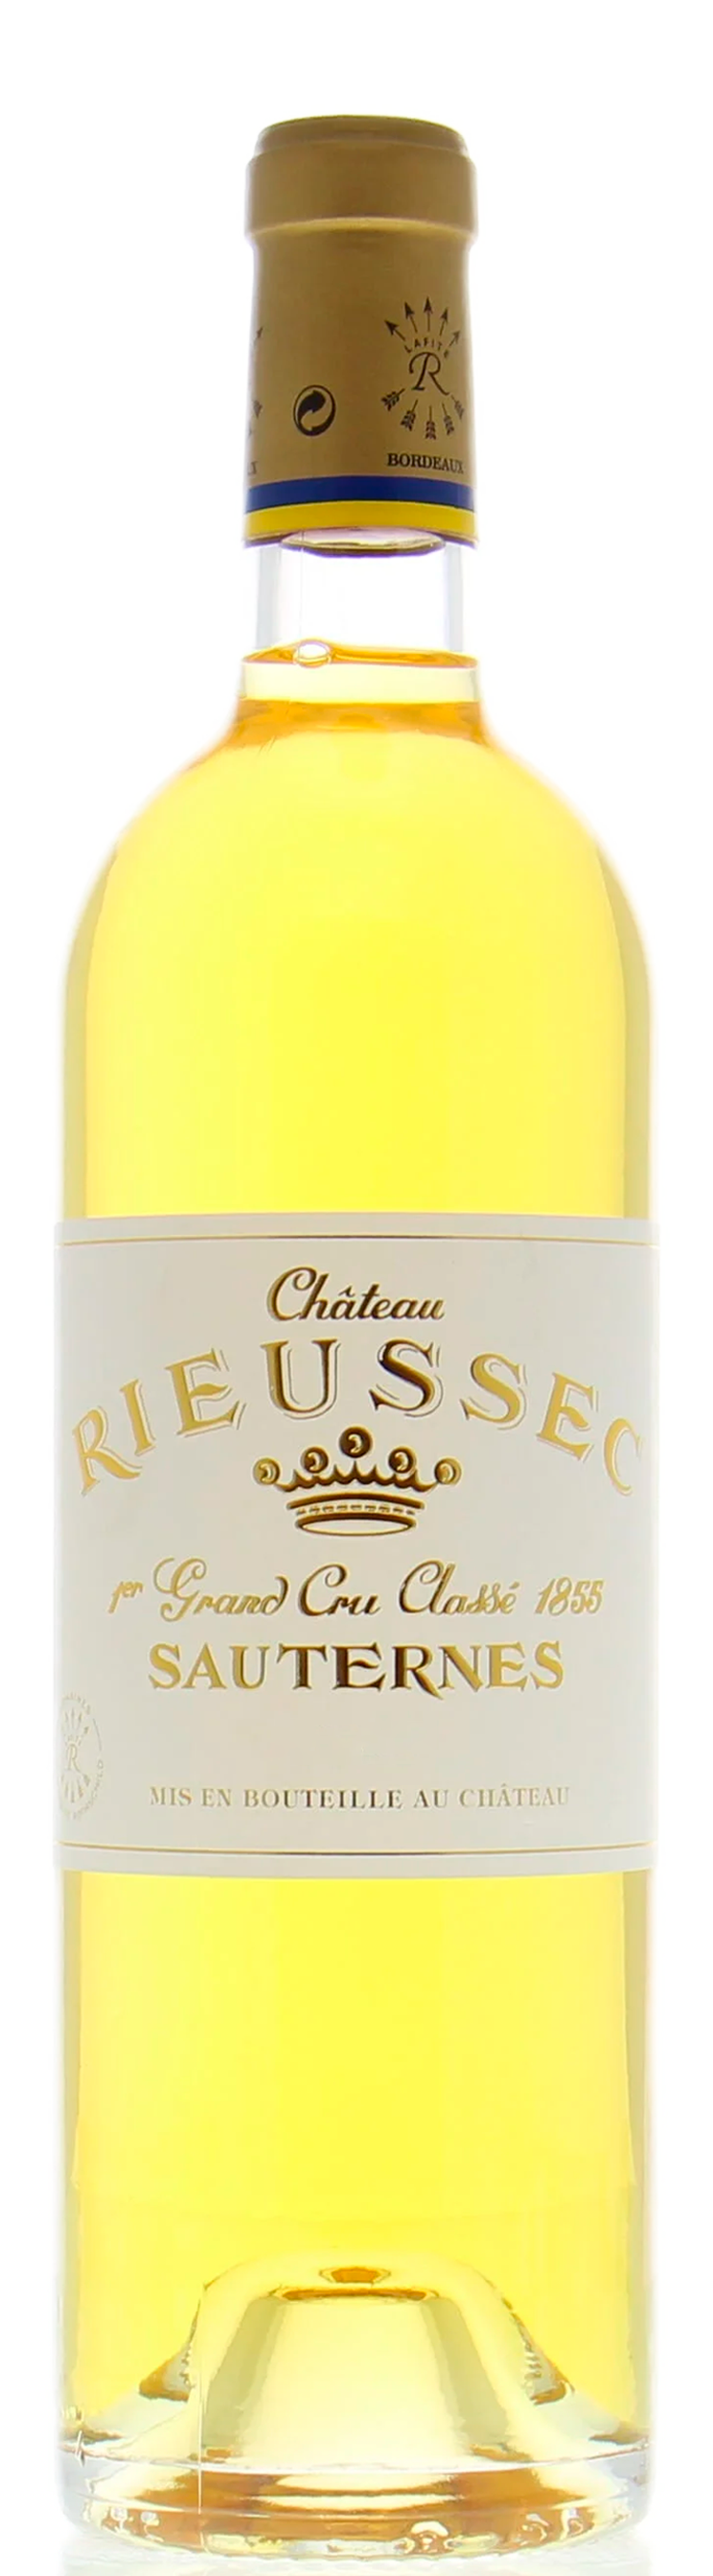 Château Rieussec 2016 Sauternes 0.375 L